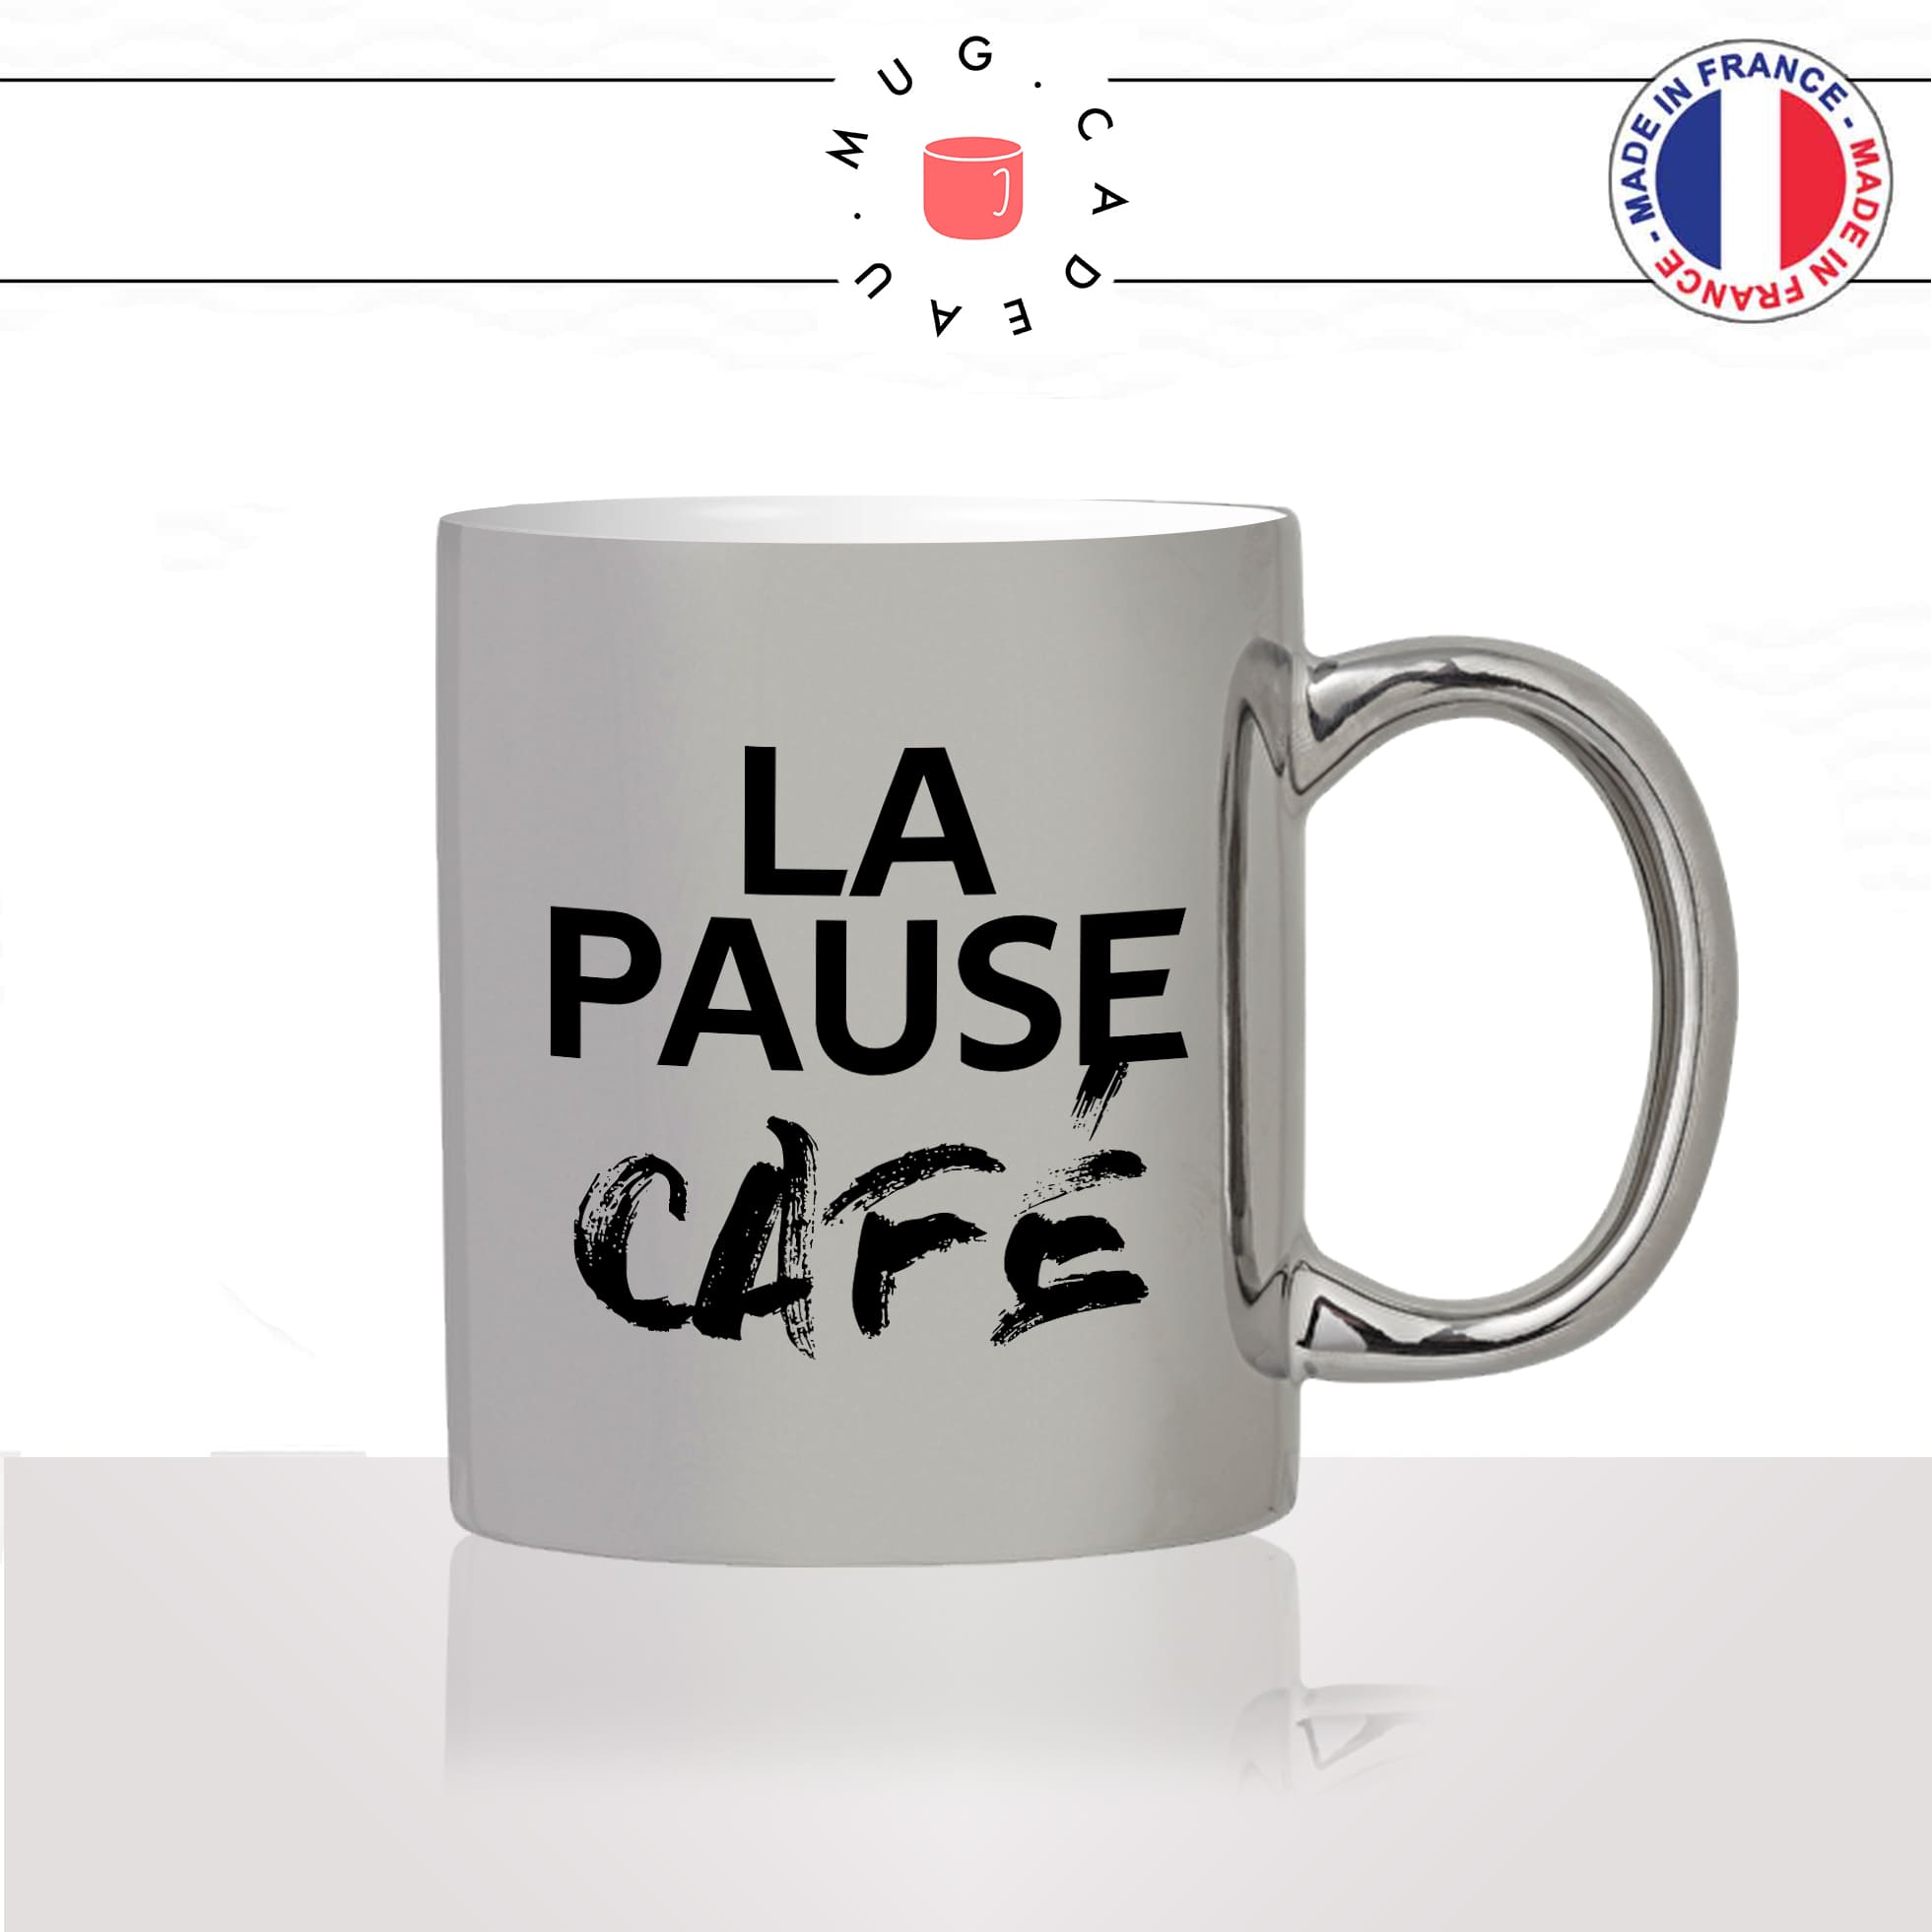 mug-tasse-argenté-argent-gris-silver-la-pause-café-thé-collegue-travail-boulot-homme-femme-accro-humour-fun-idée-cadeau-originale-cool2